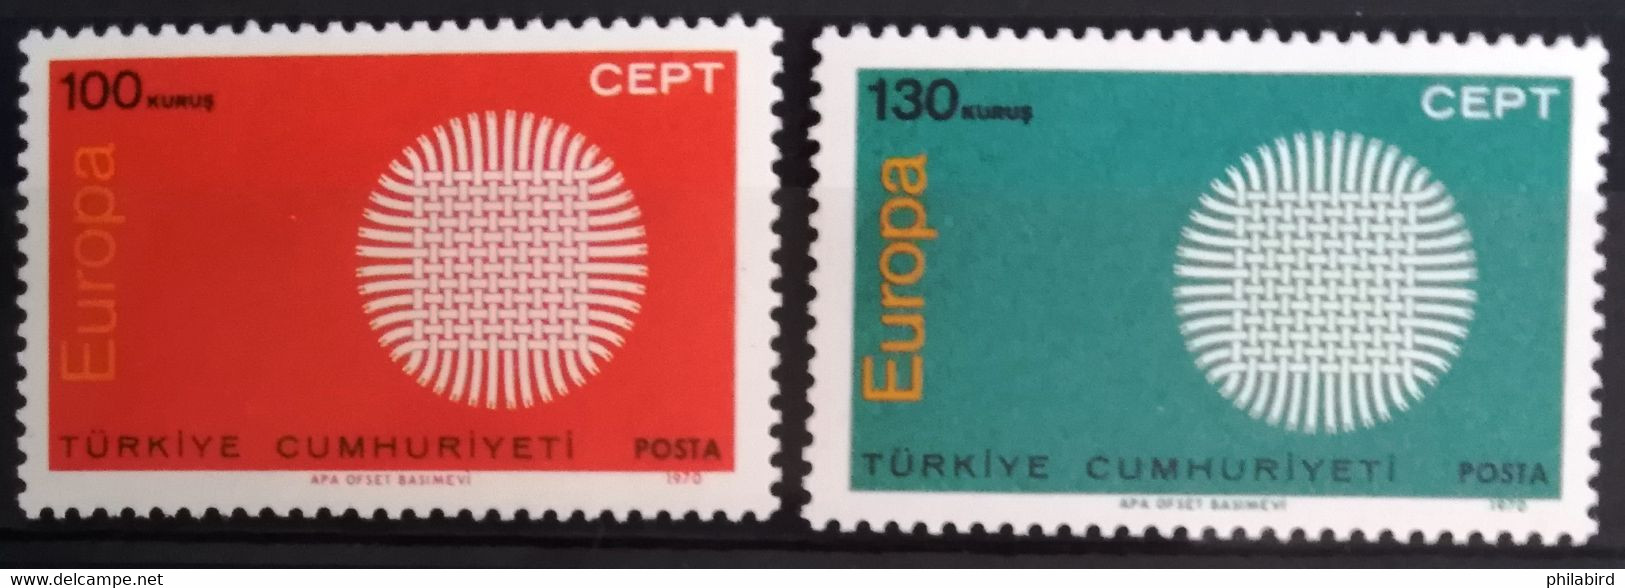 EUROPA 1970 - TURQUIE                    N° 1952/1953                      NEUF** - 1970